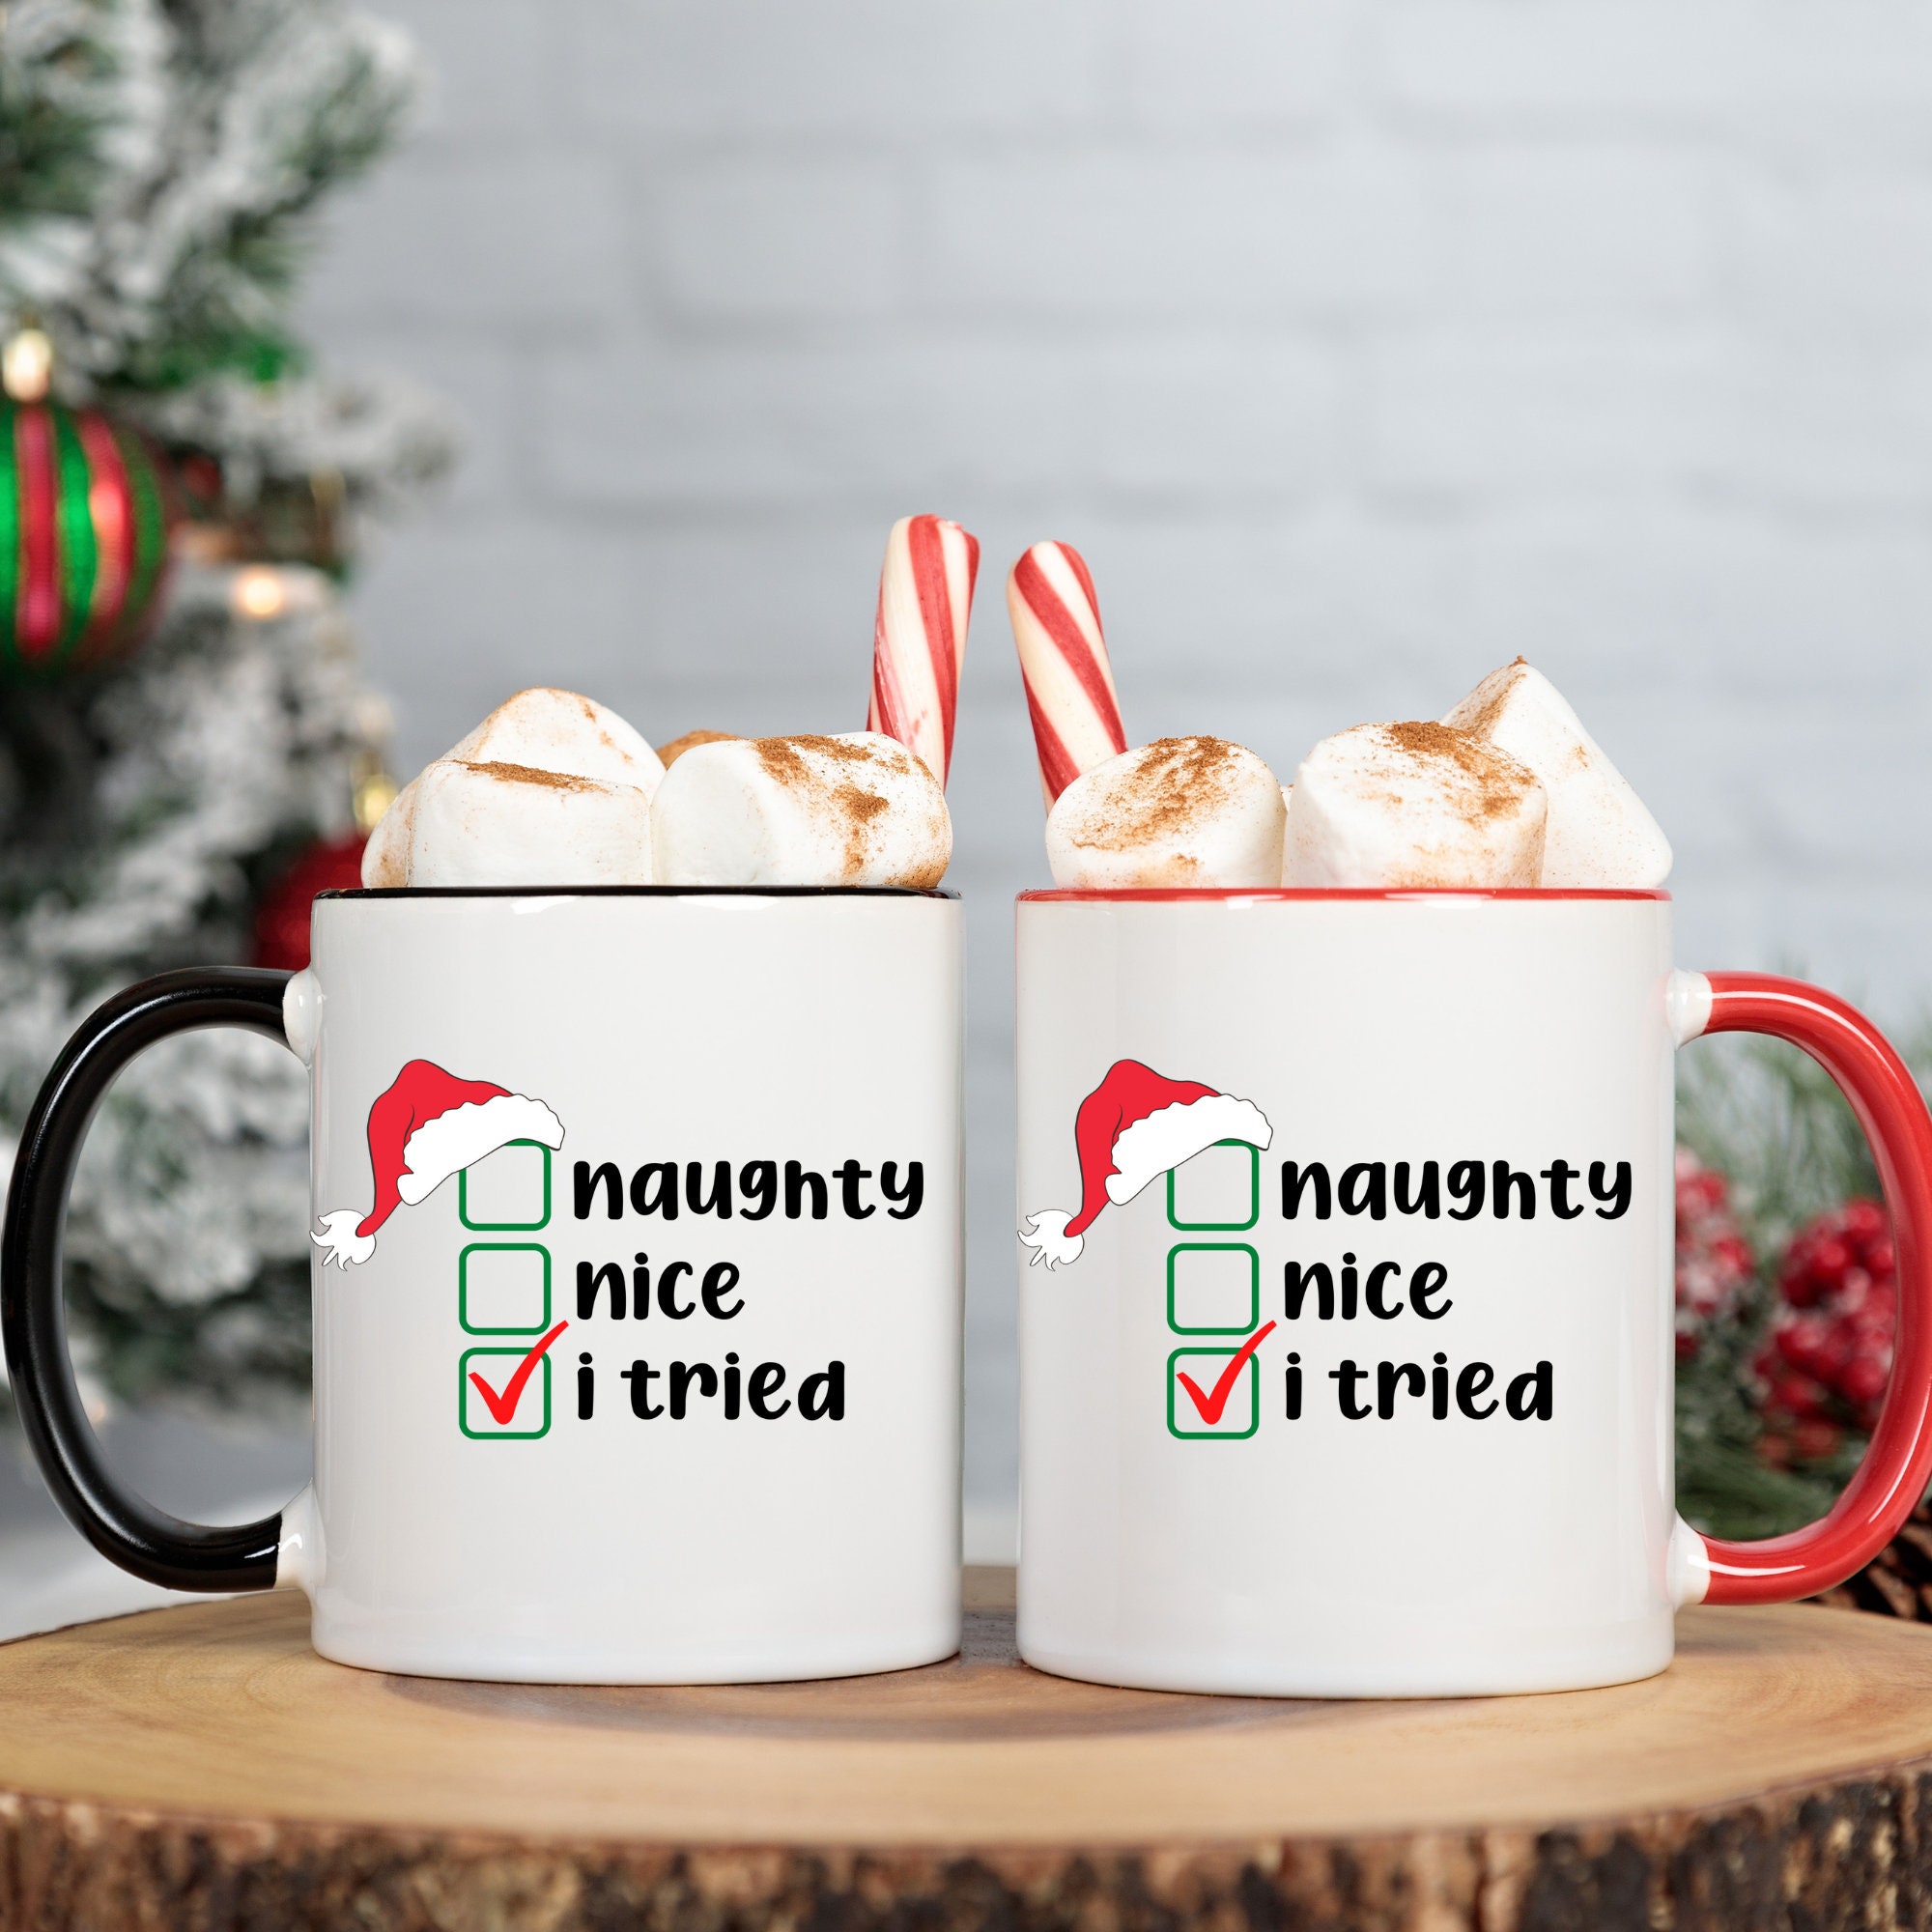 Mug, Too Cute for The Naughty List, Christmas Mugs, Funny Gift Cup Mug –  23sweets